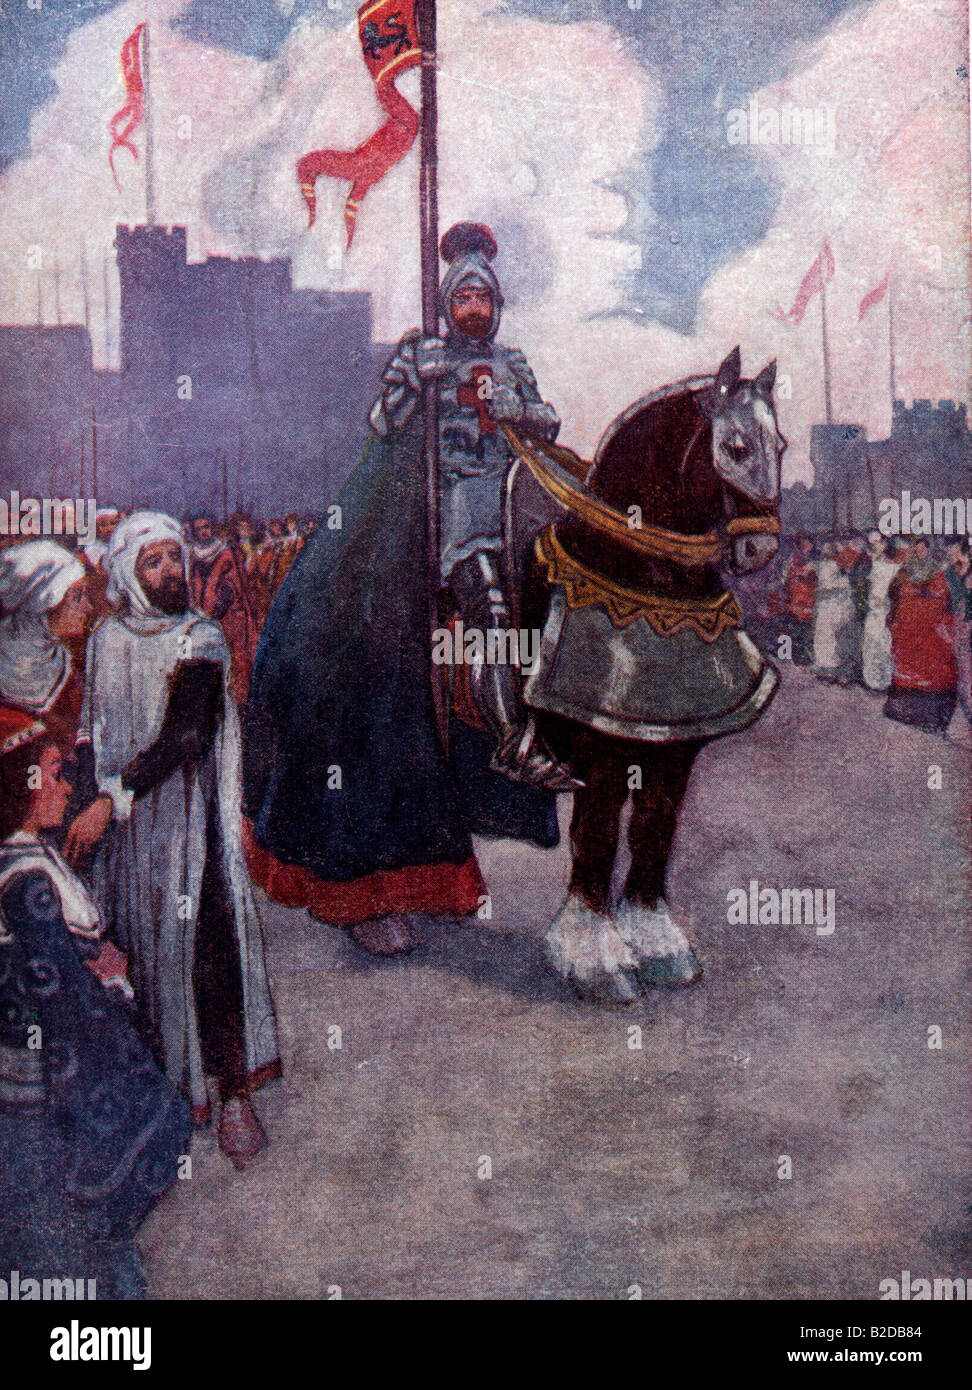 El rey Ricardo I en su camino a Palastine - 3ª Cruzada Foto de stock